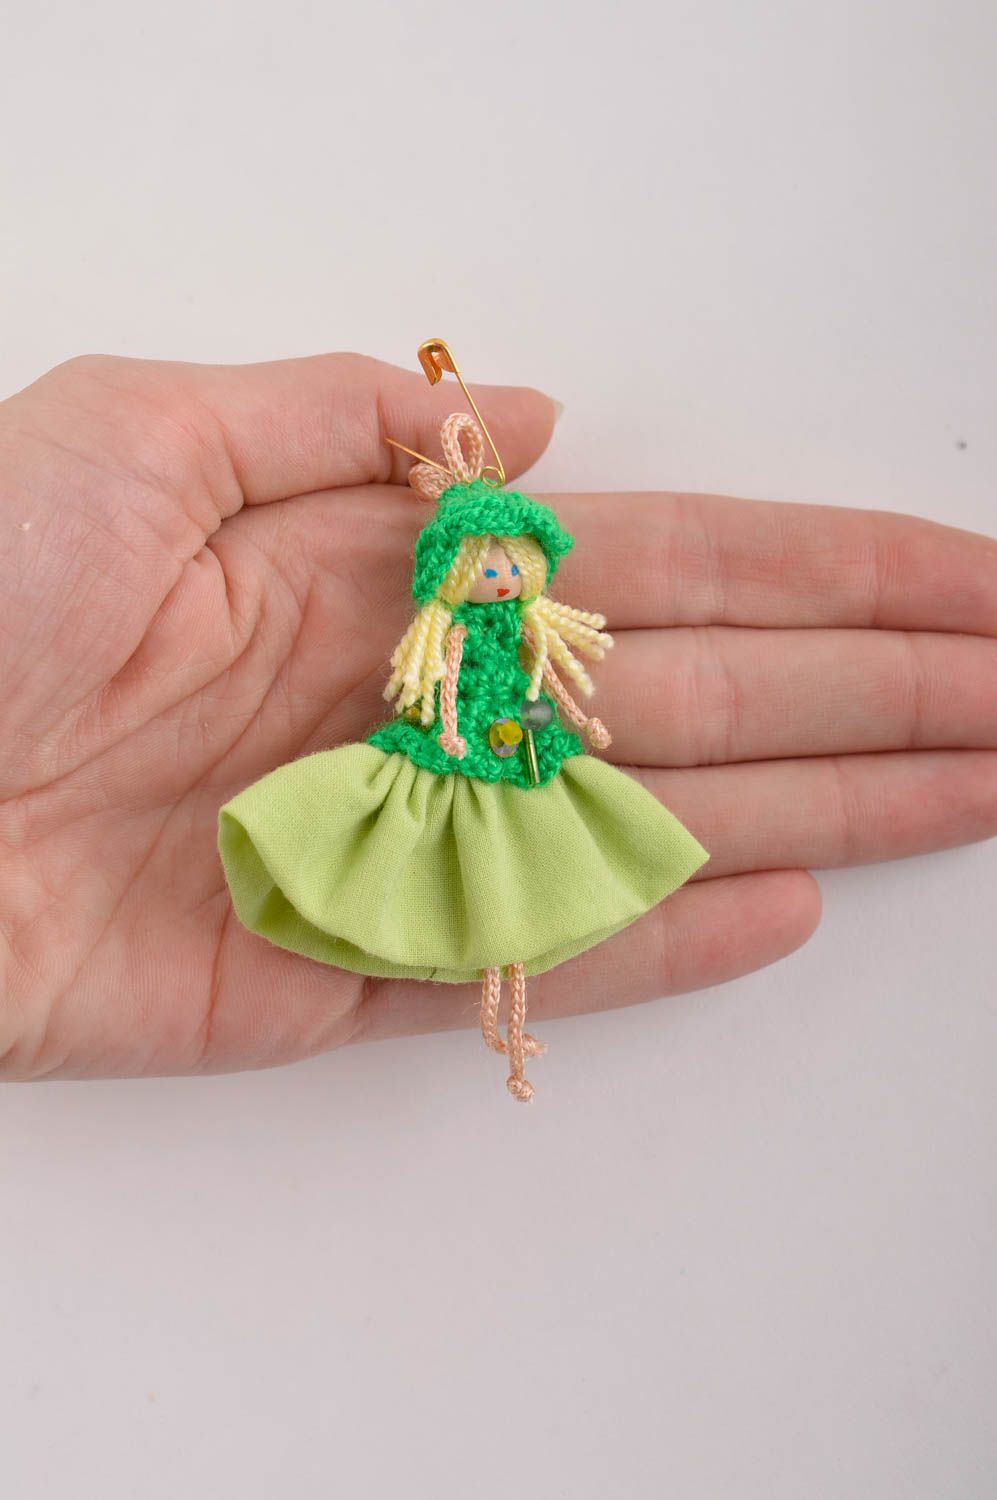 Брошь ручной работы текстильная брошь кукла авторское украшение из хлопка фото 4